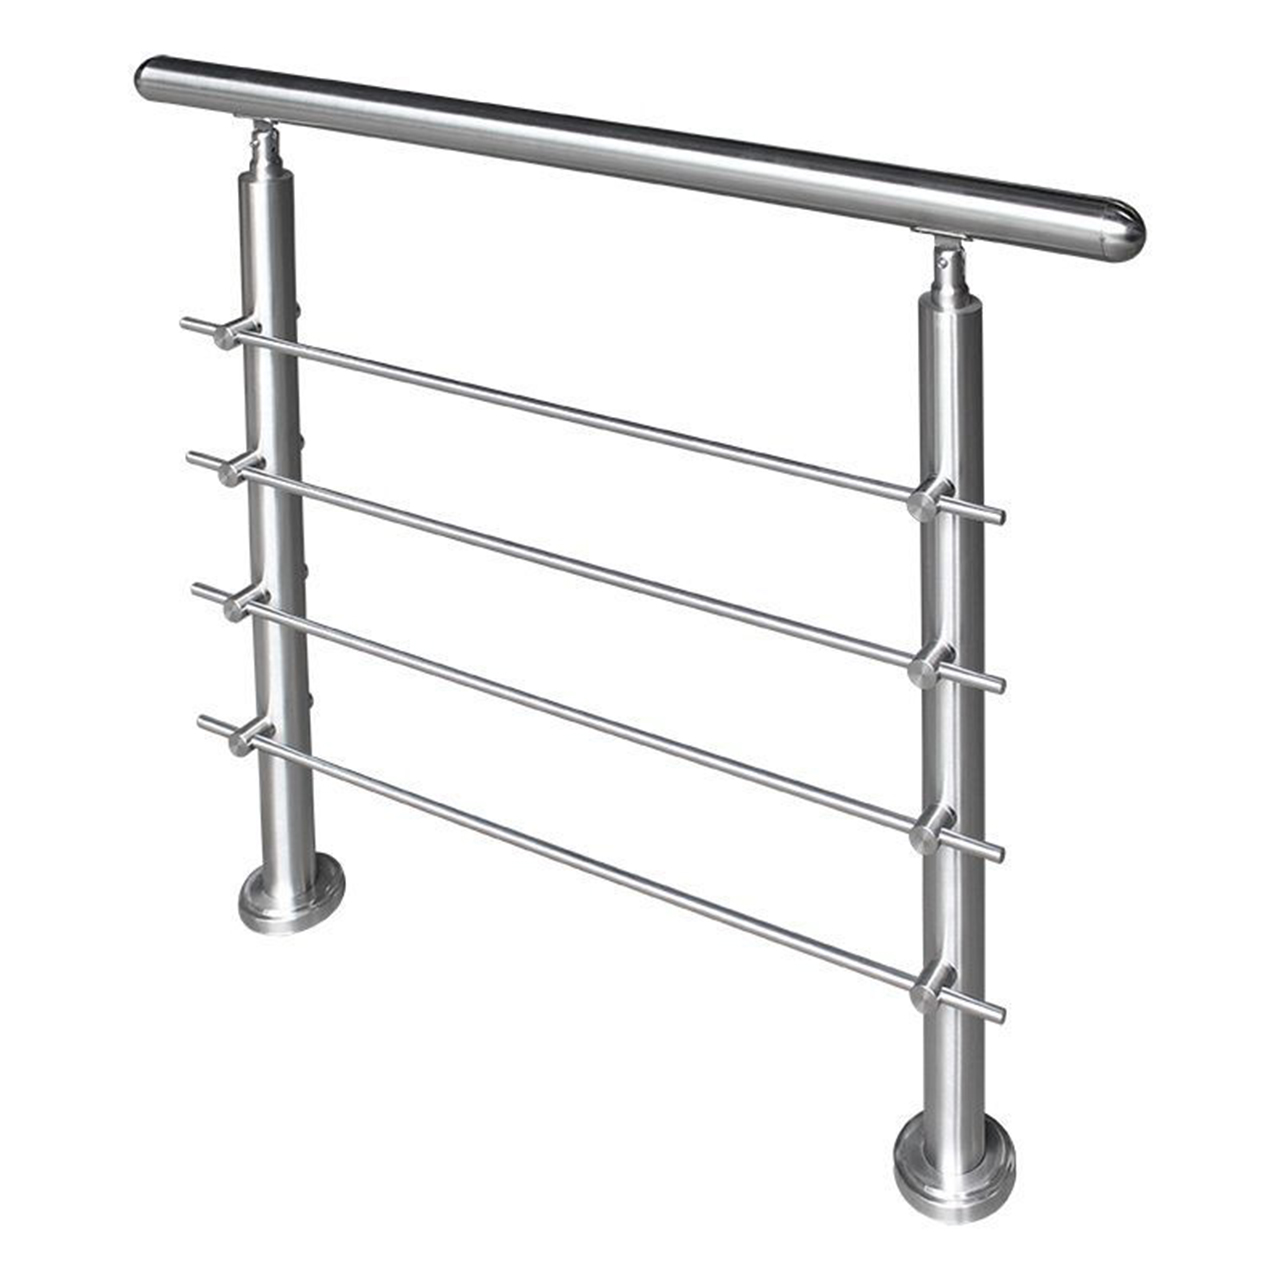 Stainless Steel Handrail Post Kits Bar Railing Post Balustrade Hardware Modern Design For Balcony Railing